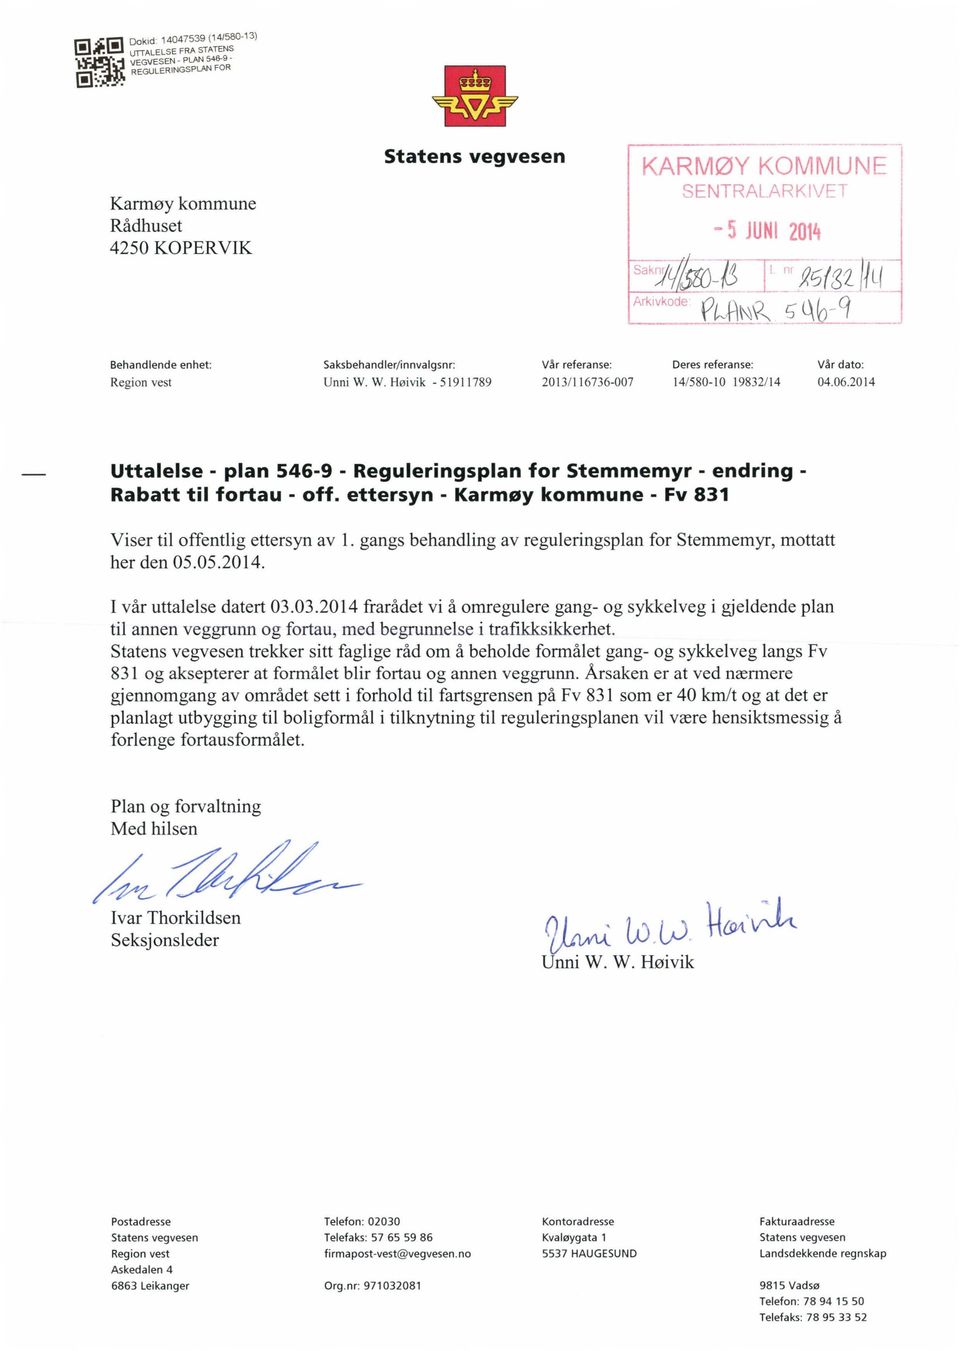 2014 Uttalelse - plan 546-9 - Reguleringsplan for Stemmemyr - endring - Rabatt til fortau - off. ettersyn - Karmøy kommune - Fv 831 Viser til offentlig ettersyn av 1.